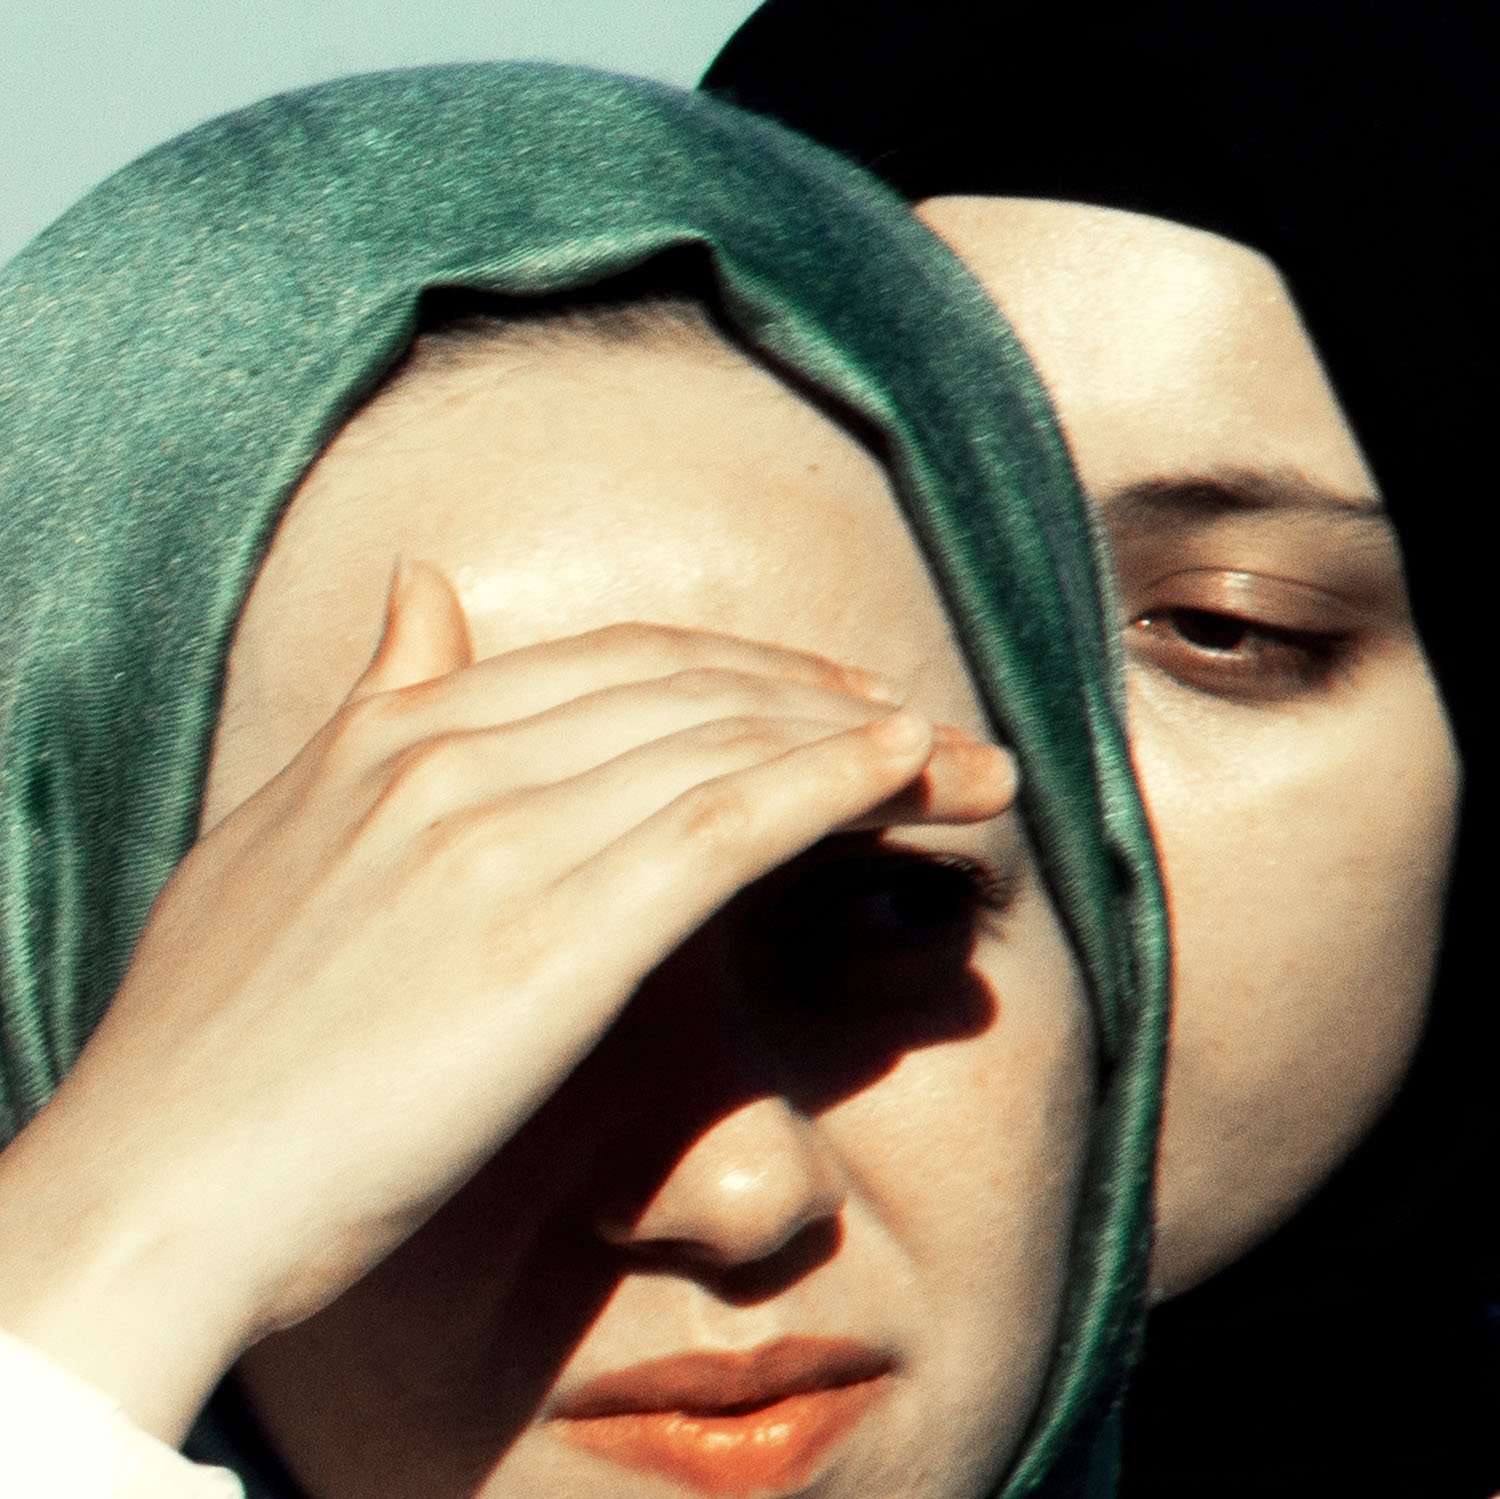 two-women-headscarves.jpg